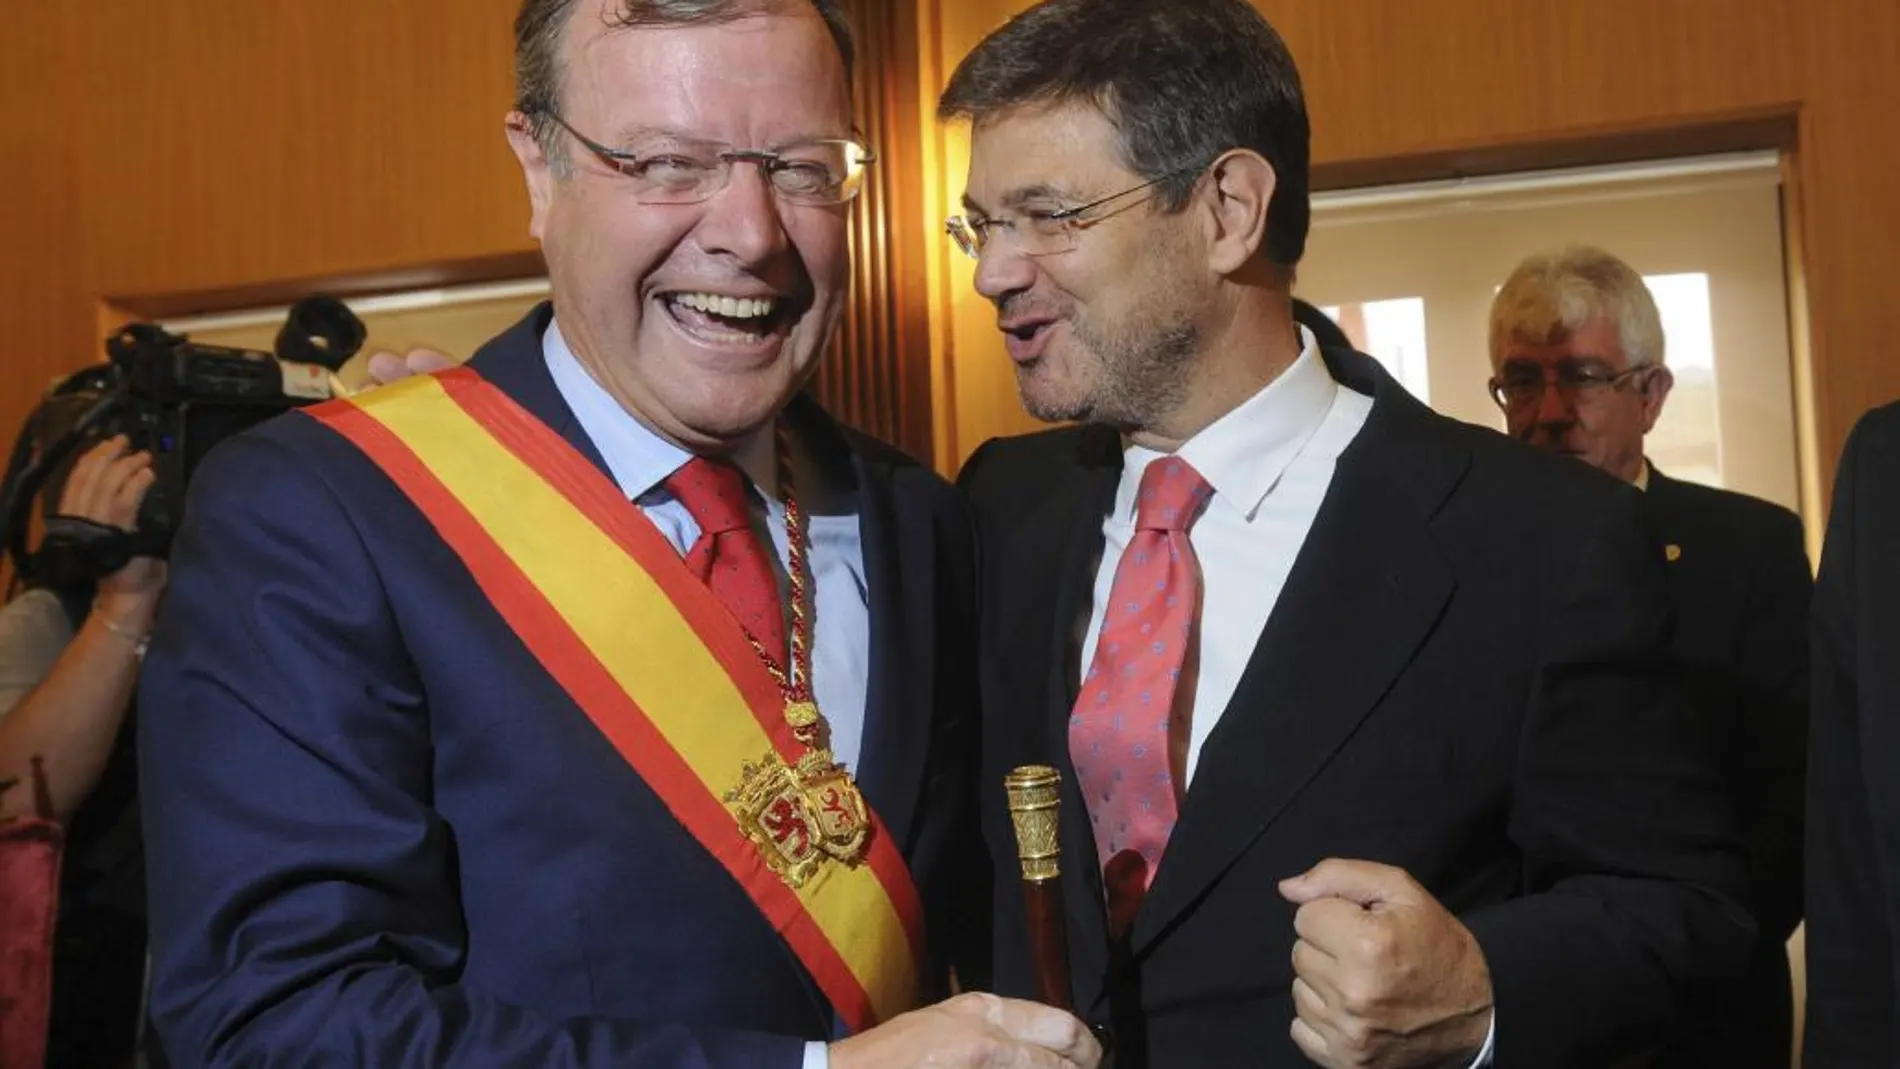 El ministro de Justicia Rafael Catalá (d) felicita al alcalde de León Antonio Silván tras su toma de posesión del cargo.